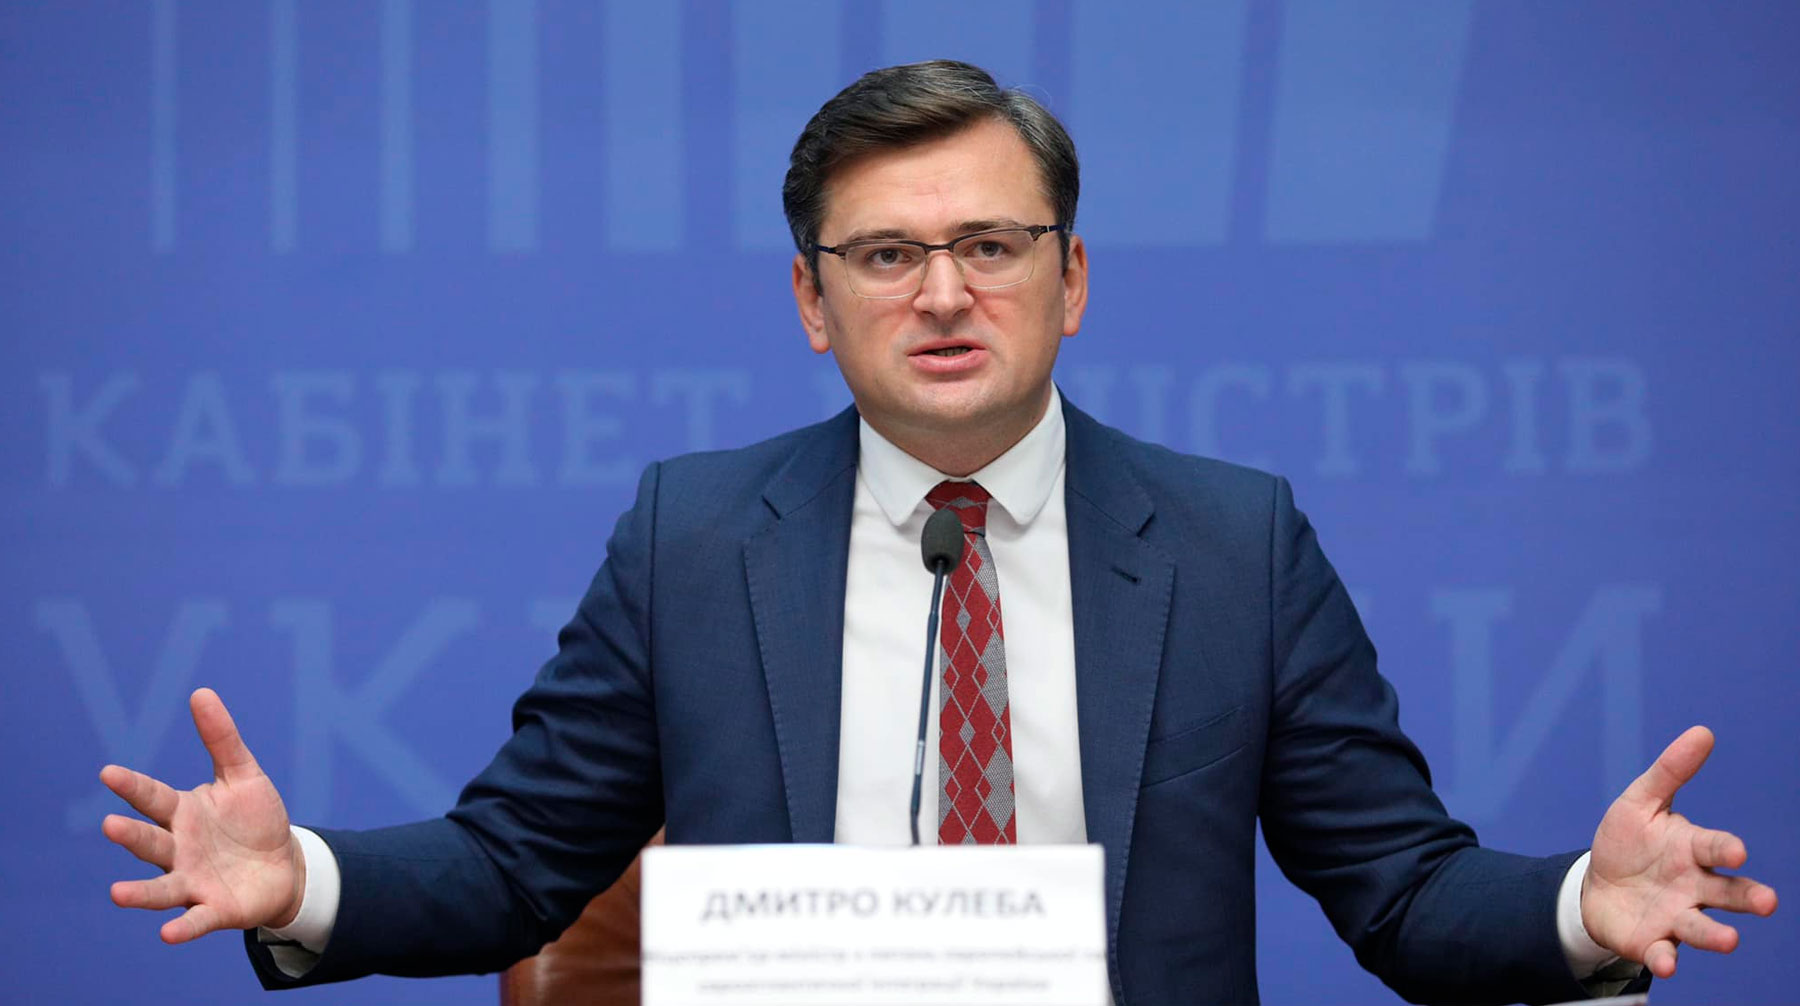 Западные страны не должны думать, что Украина охотнее пойдет на уступки при отсутствии поставок, сказал дипломат undefined